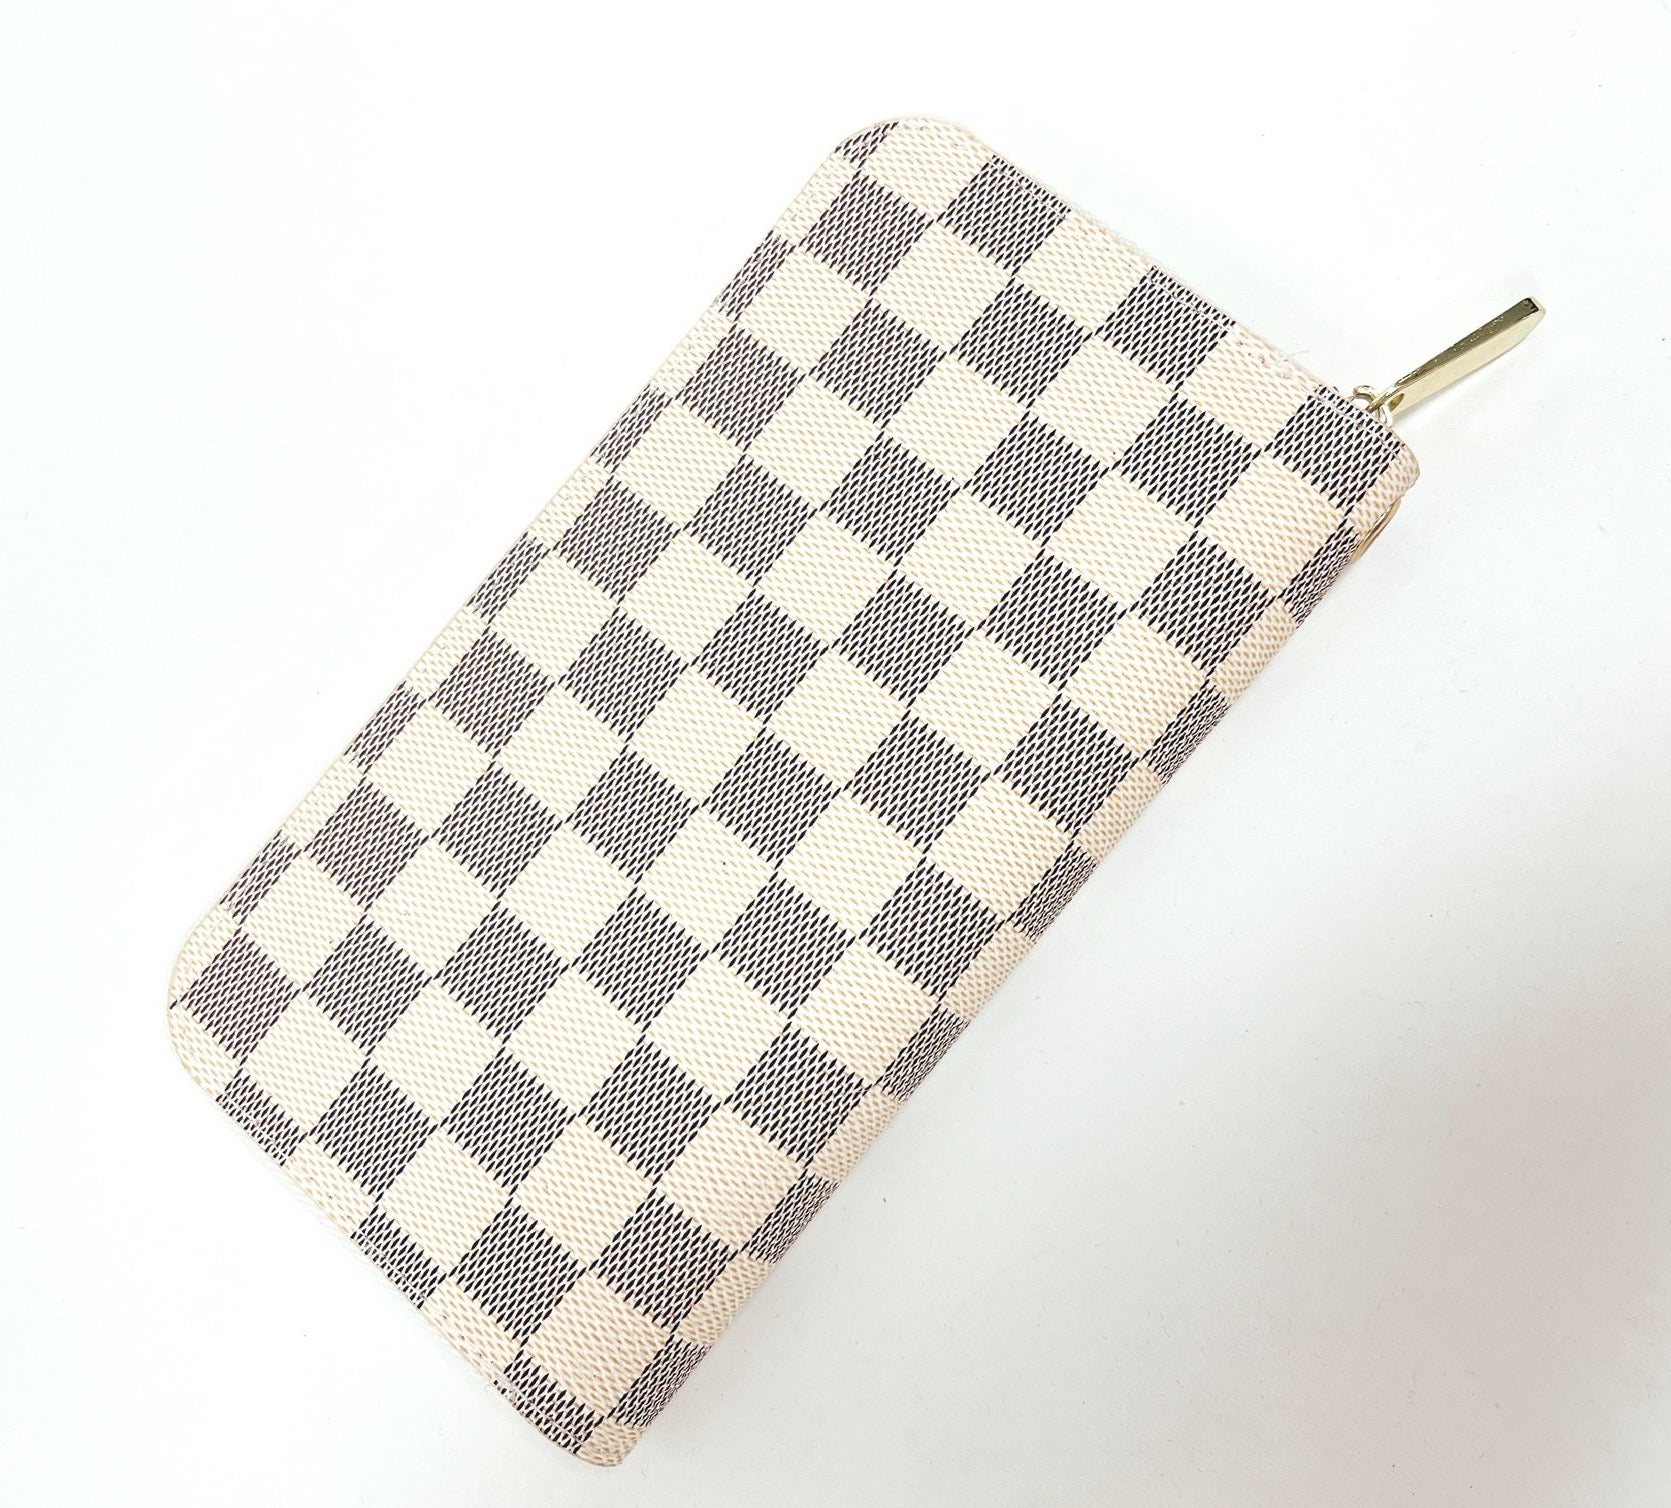 Coolmade Women's Checkered Zip Around Wallet